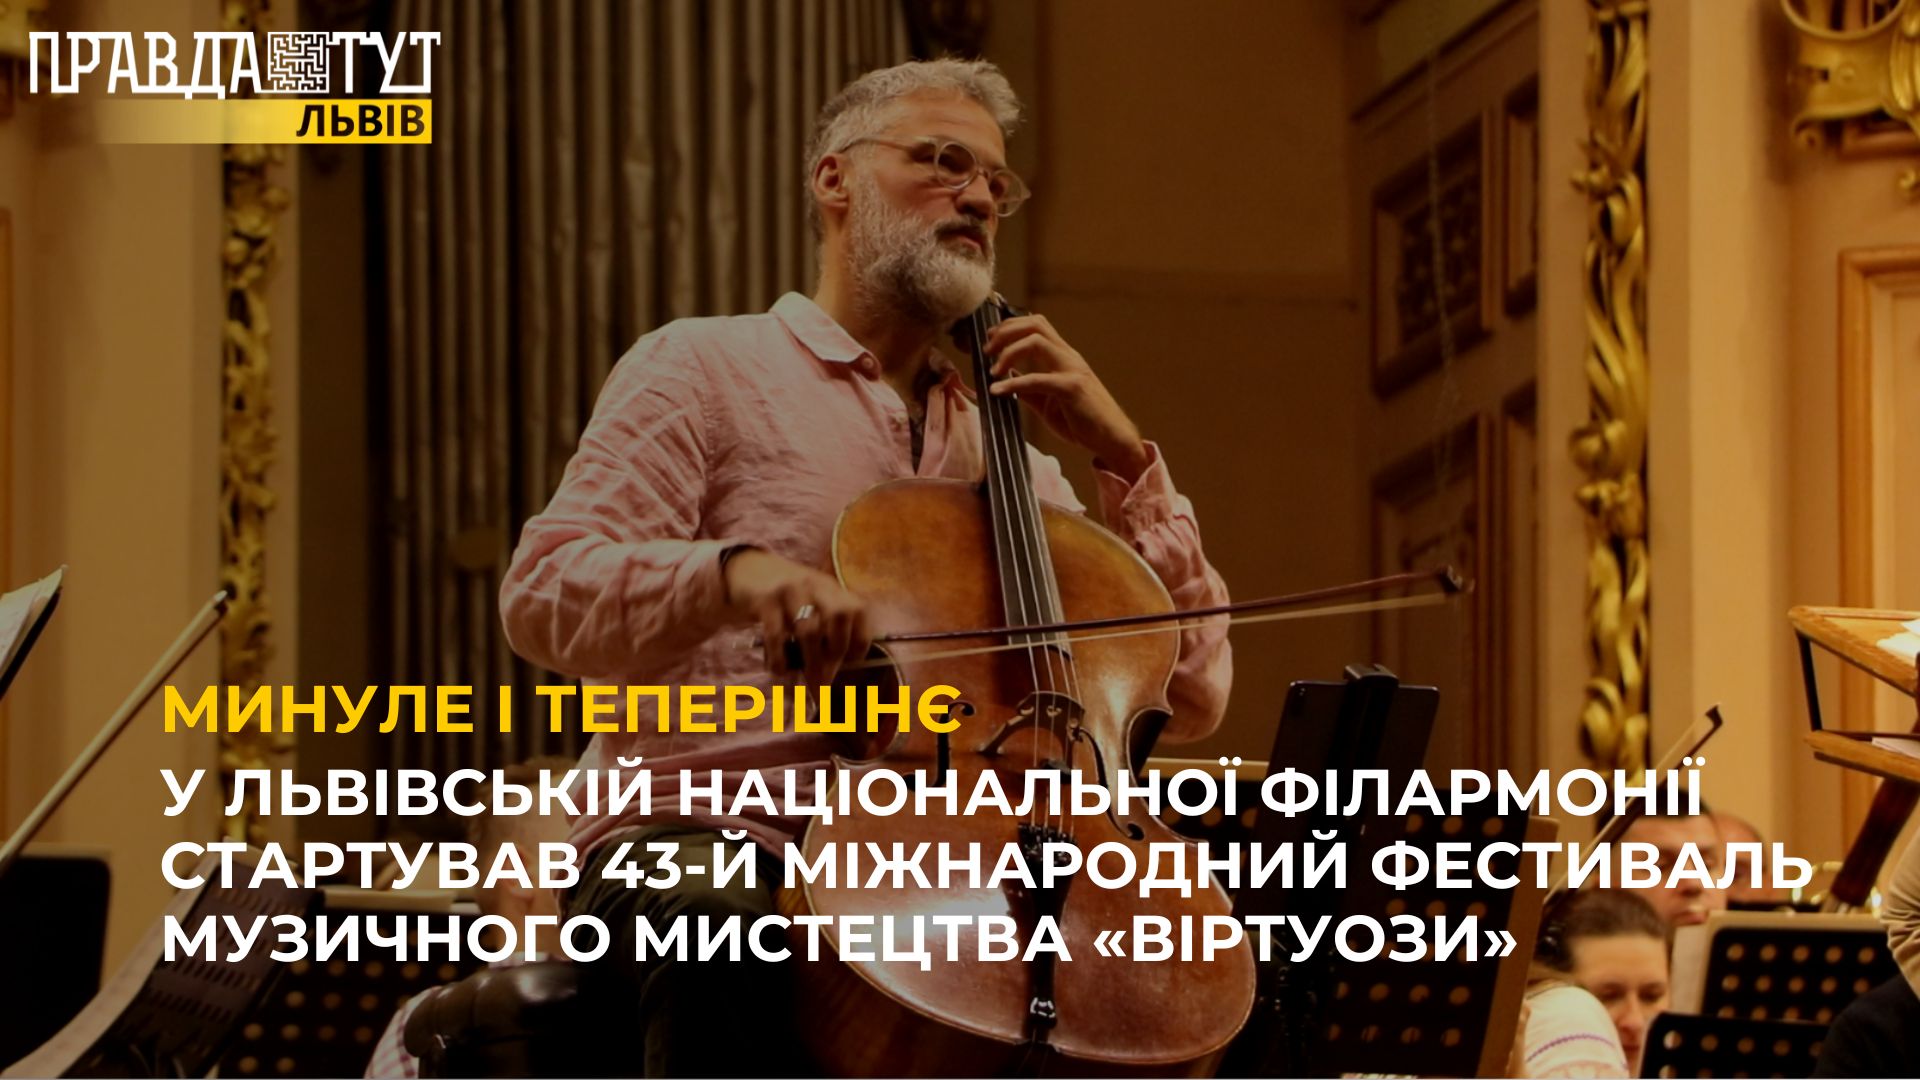 У Львівській національної філармонії стартував 43-й Міжнародний фестиваль музичного мистецтва «Віртуози»